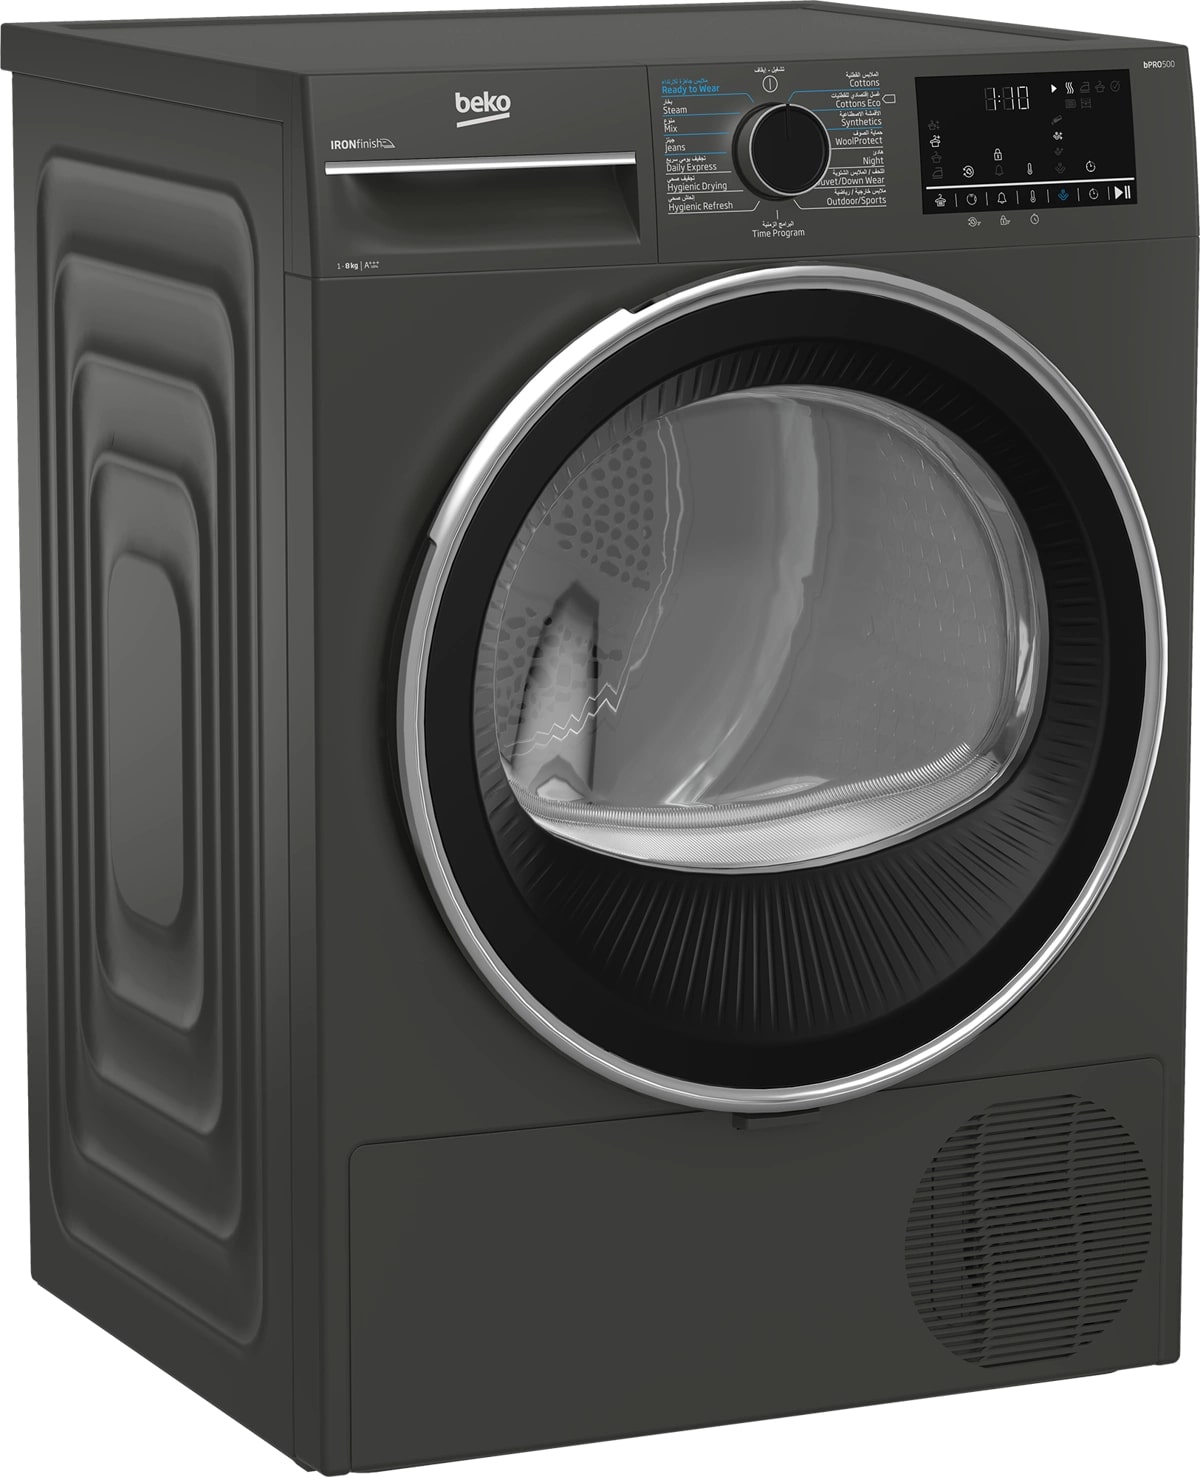 Beko Dryer 8 kg Gray Inverter Heat Pump IronFinish A+++